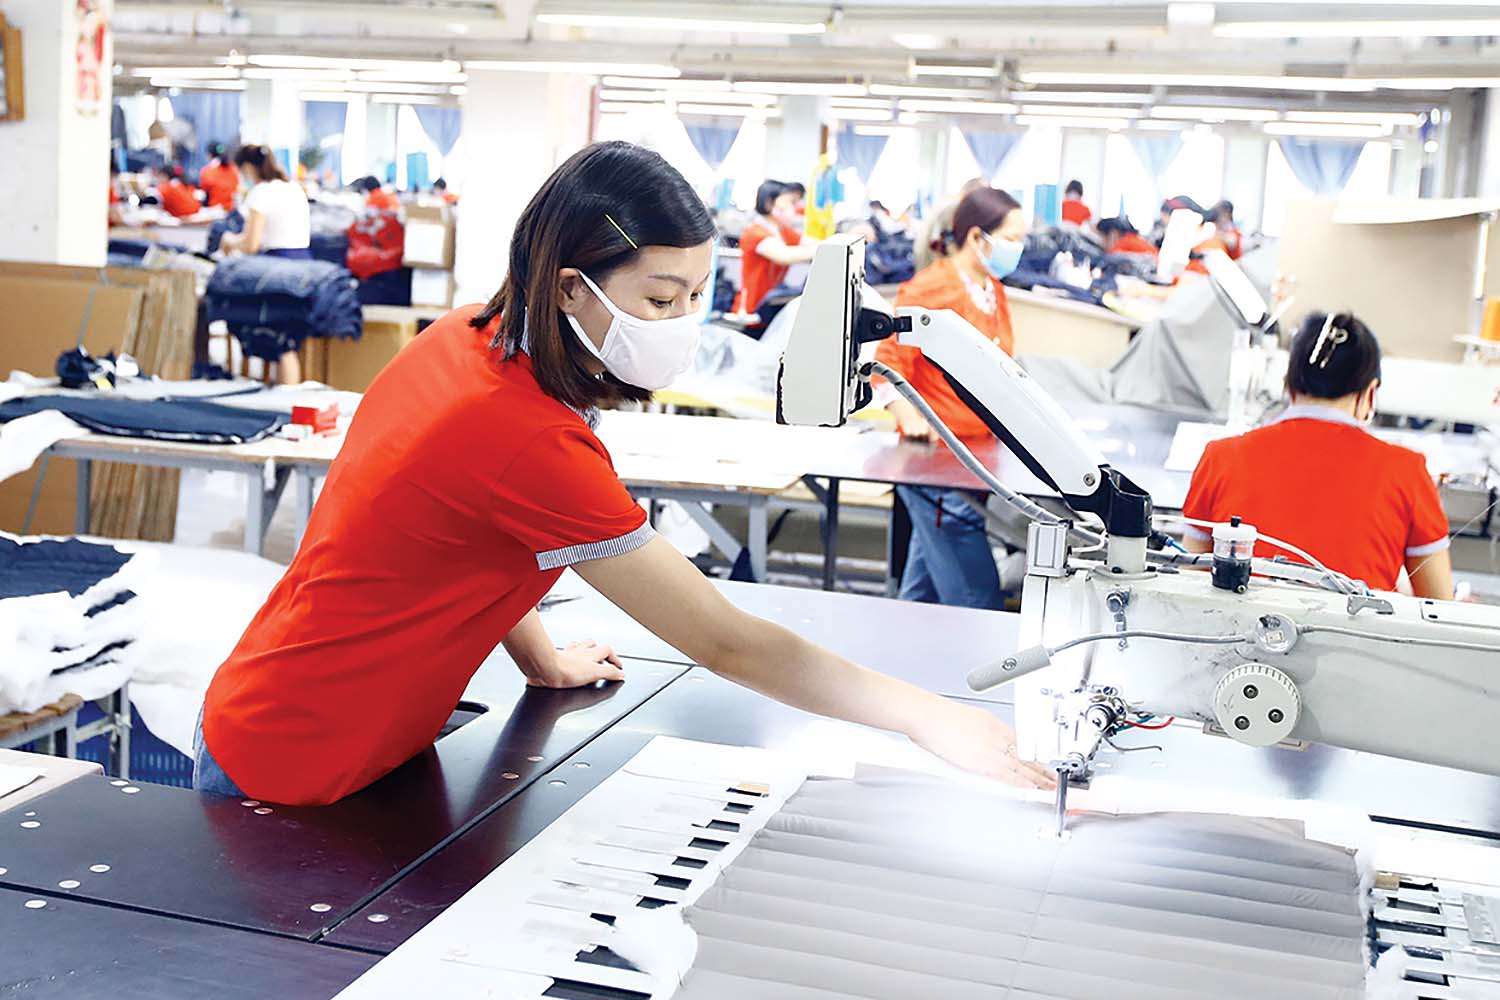 Năng suất lao động tại Việt Nam còn thấp vì tăng trưởng GDP dựa chủ yếu vào các ngành sử dụng nhiều lao động, công nghệ thấp 	ảnh: đ.t